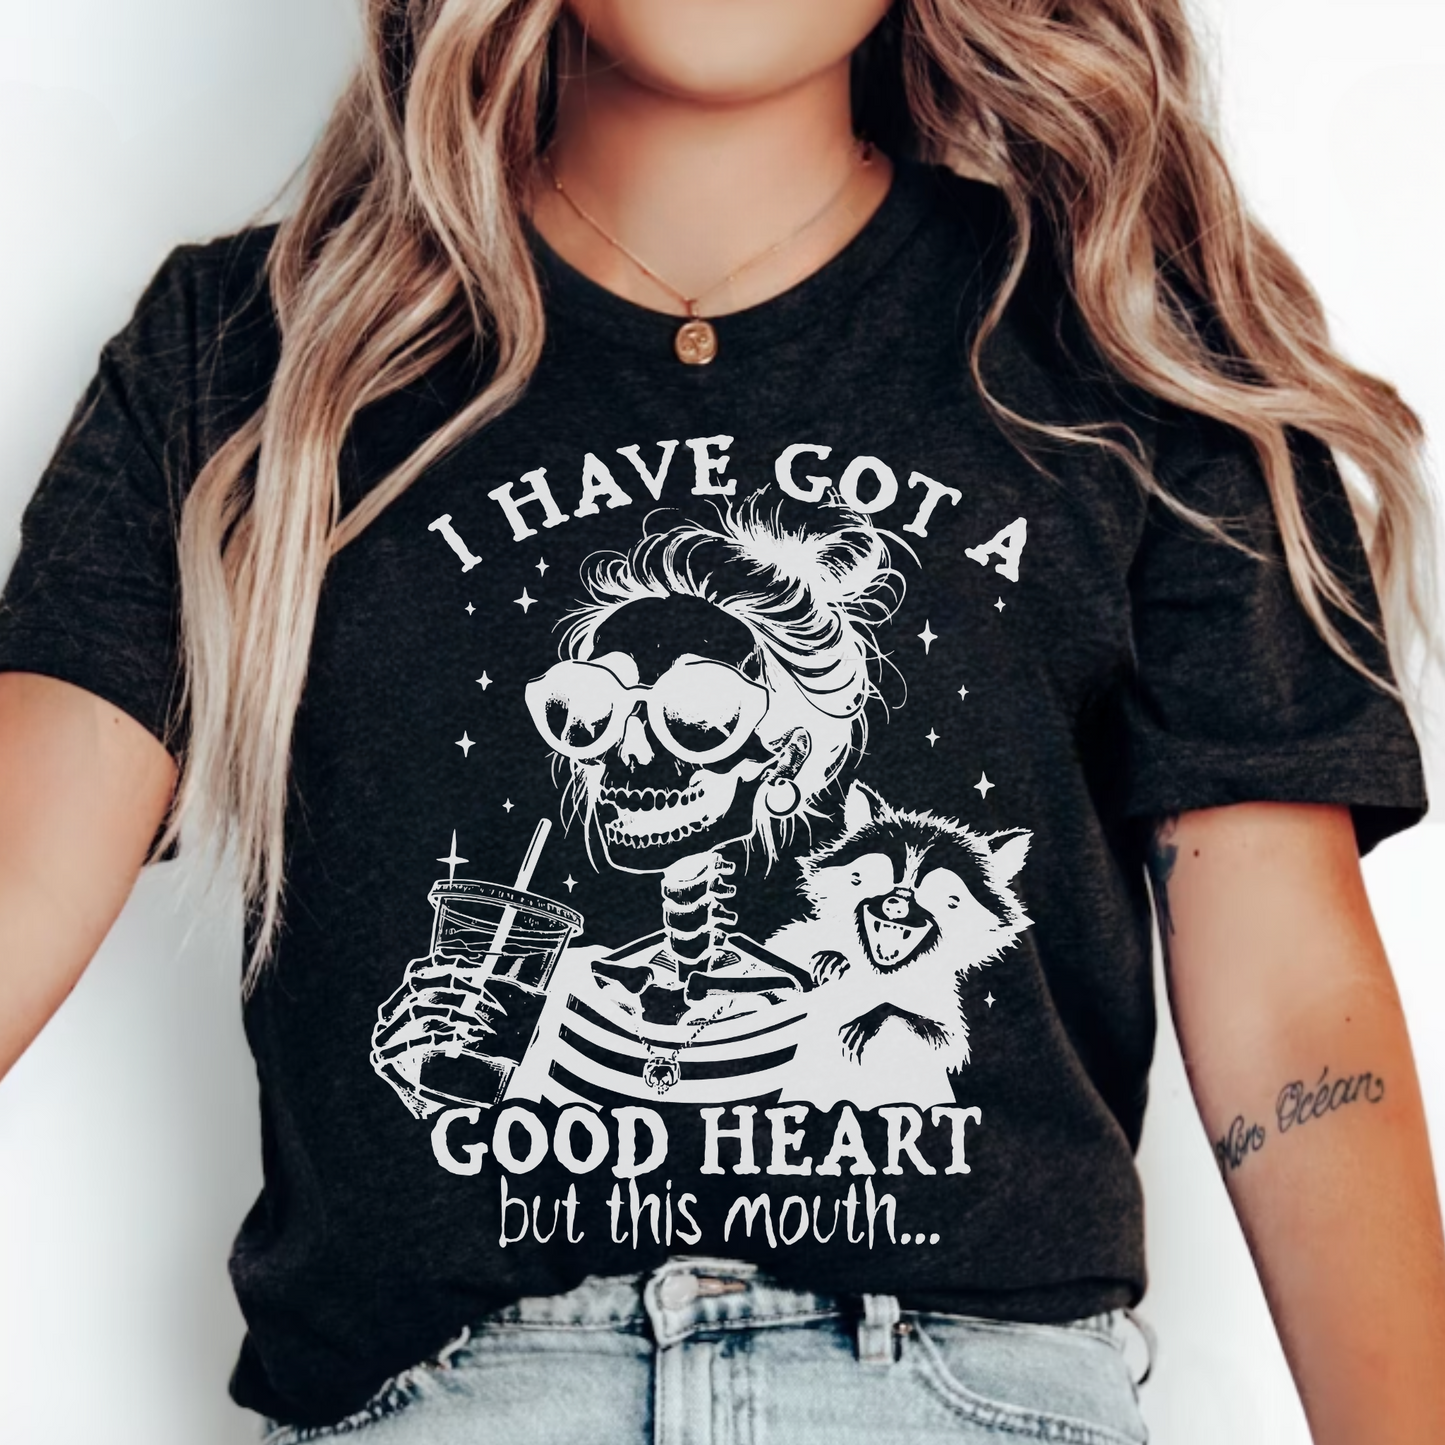 Good Heart, Bold Mouth T-Shirt